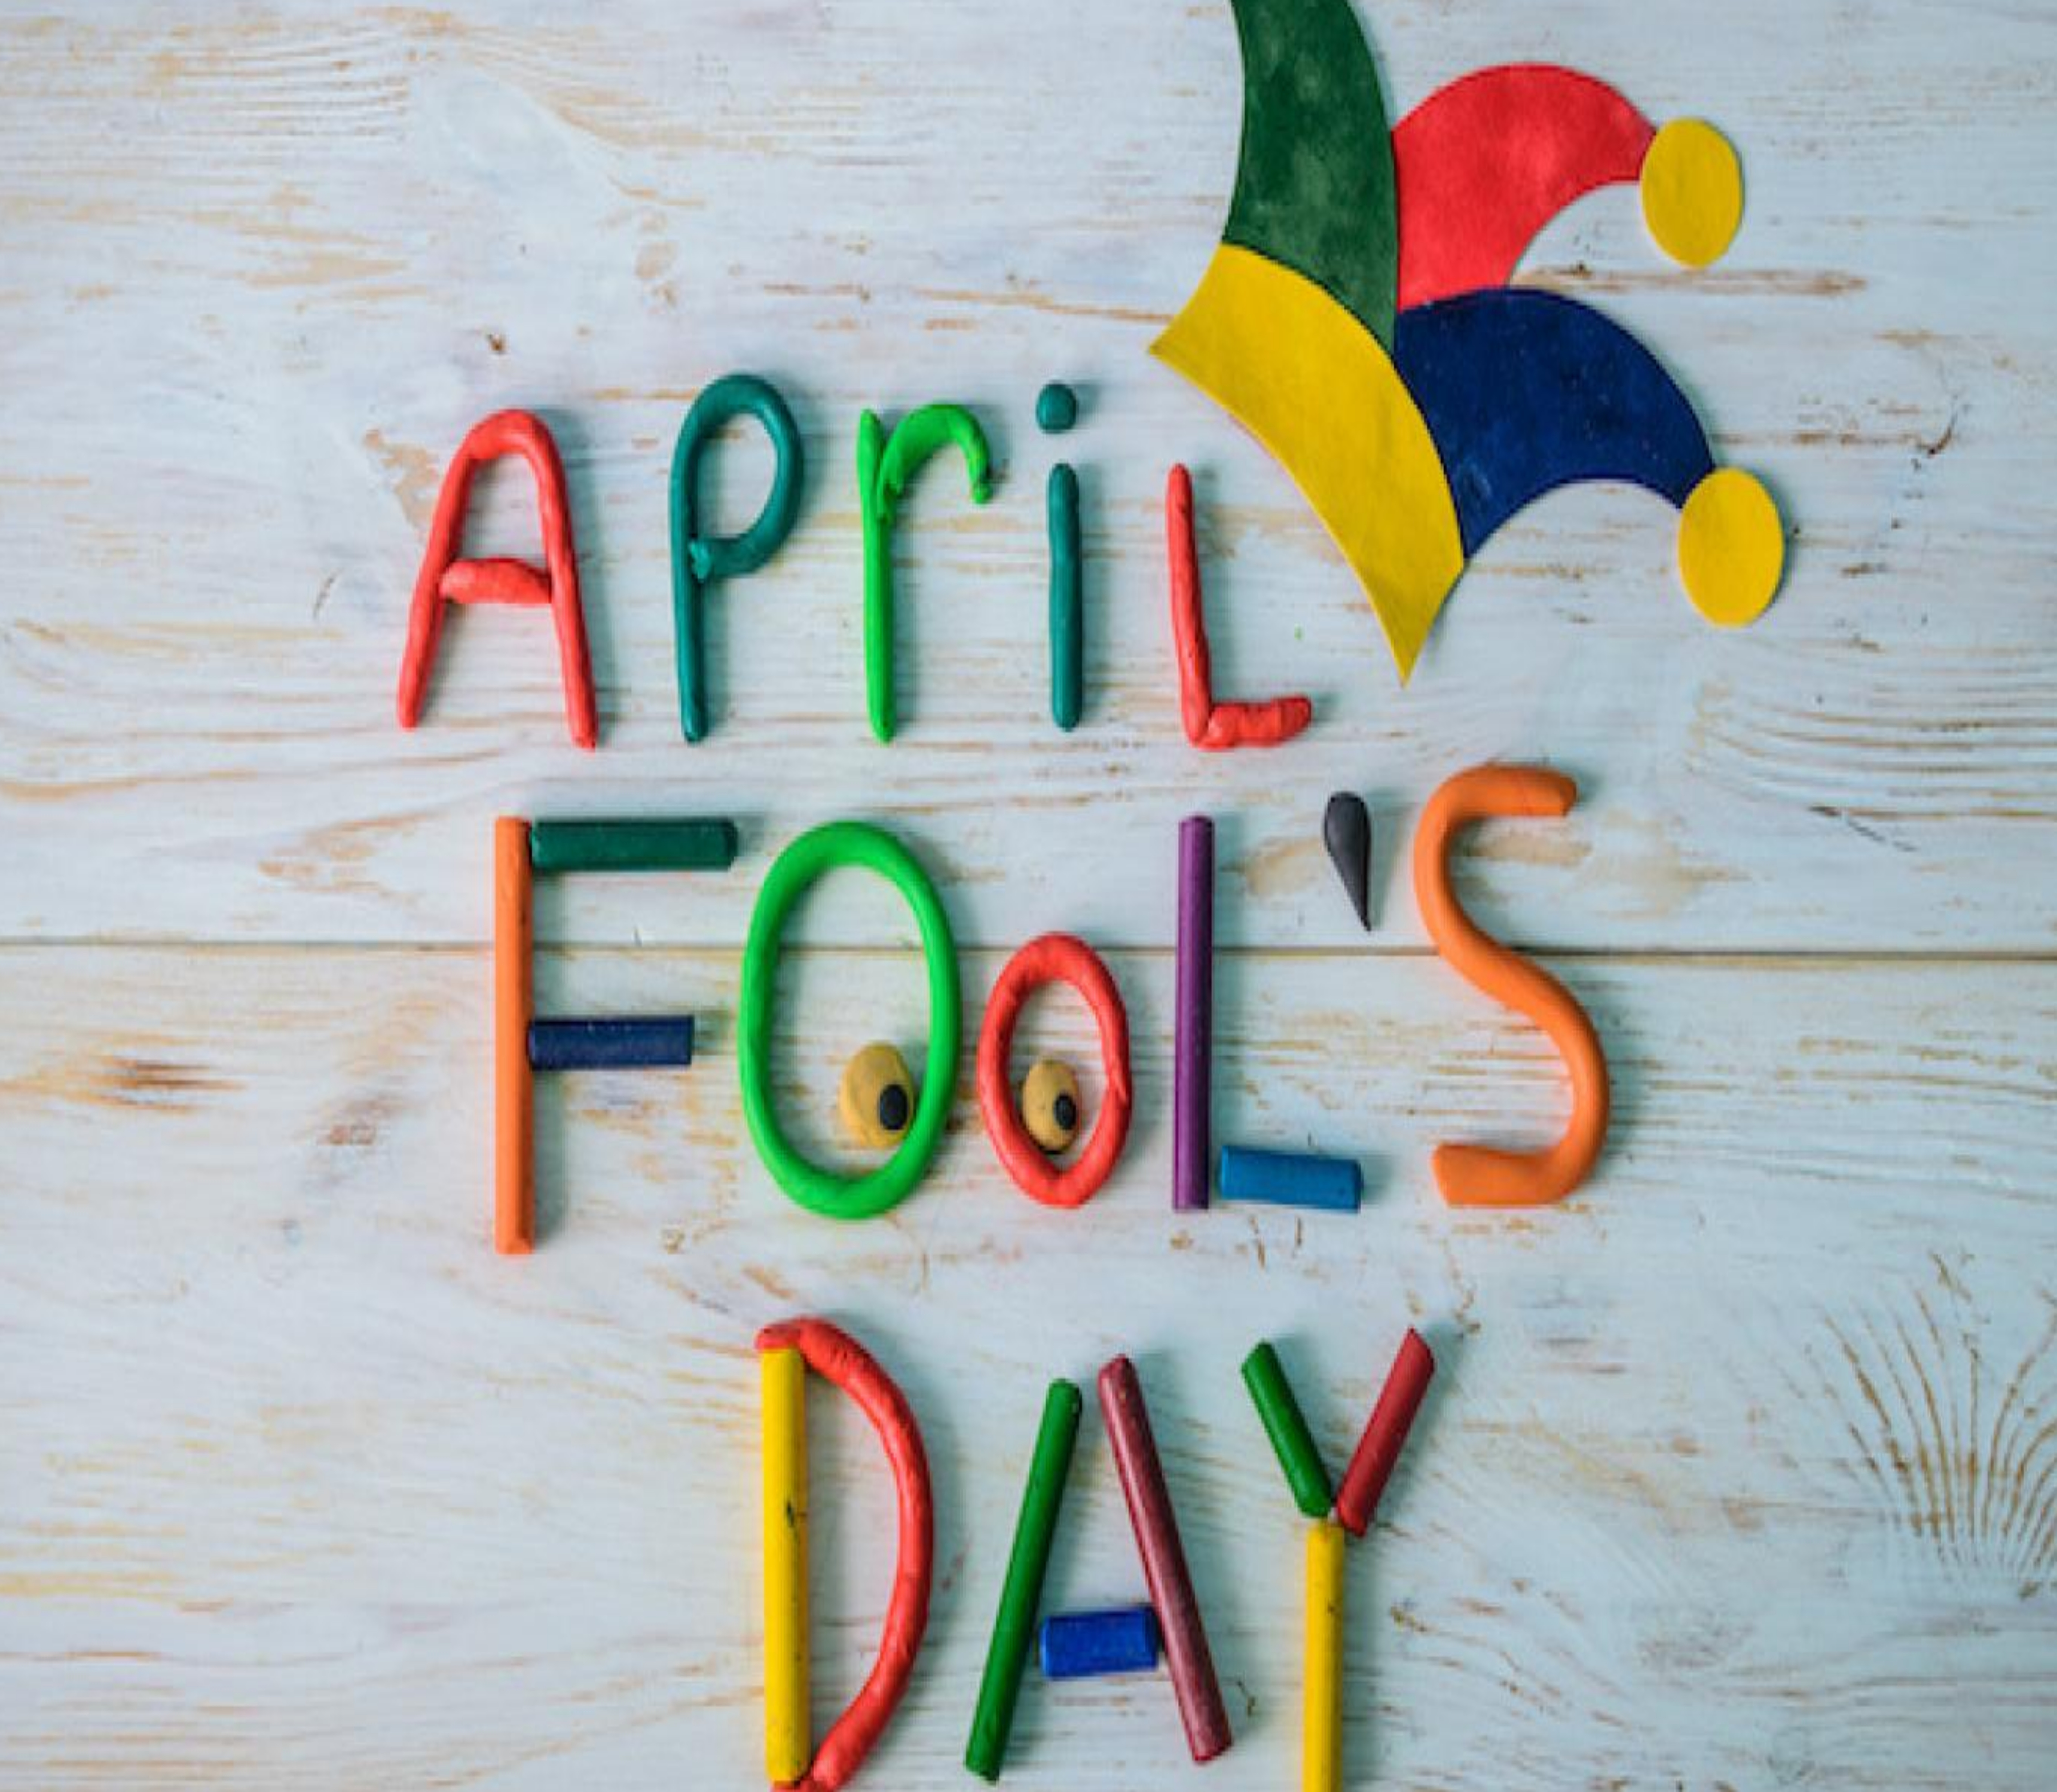 April fool’s day: क्या है अप्रैल फूल मनाने का राज़, जानिए इससे जुड़ा इतिहास